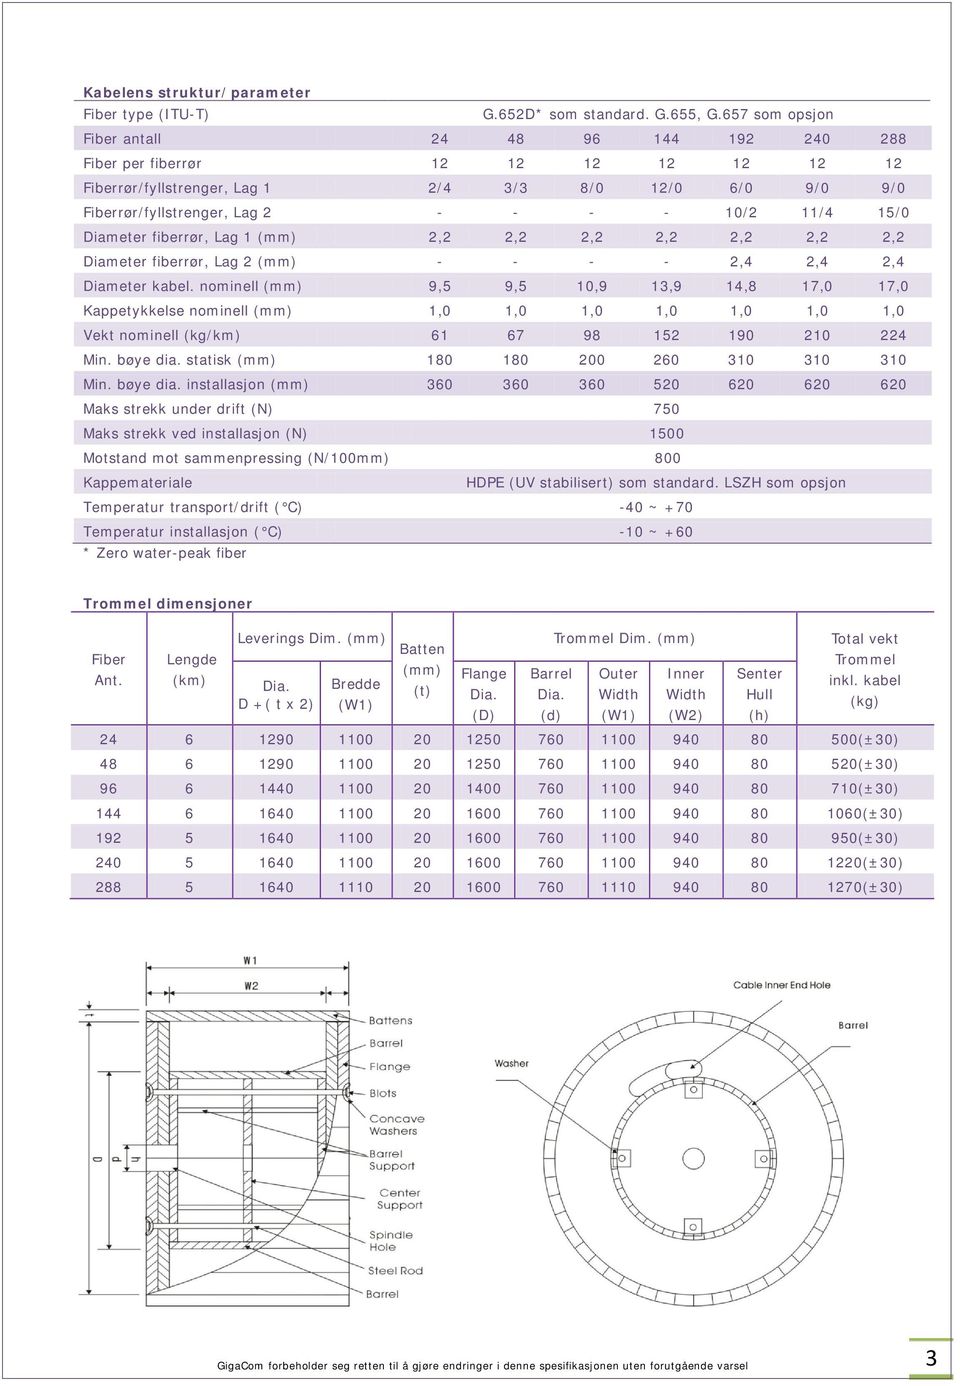 15/0 Diameter fiberrør, Lag 1 (mm) 2,2 2,2 2,2 2,2 2,2 2,2 2,2 Diameter fiberrør, Lag 2 (mm) - - - - 2,4 2,4 2,4 Diameter kabel.